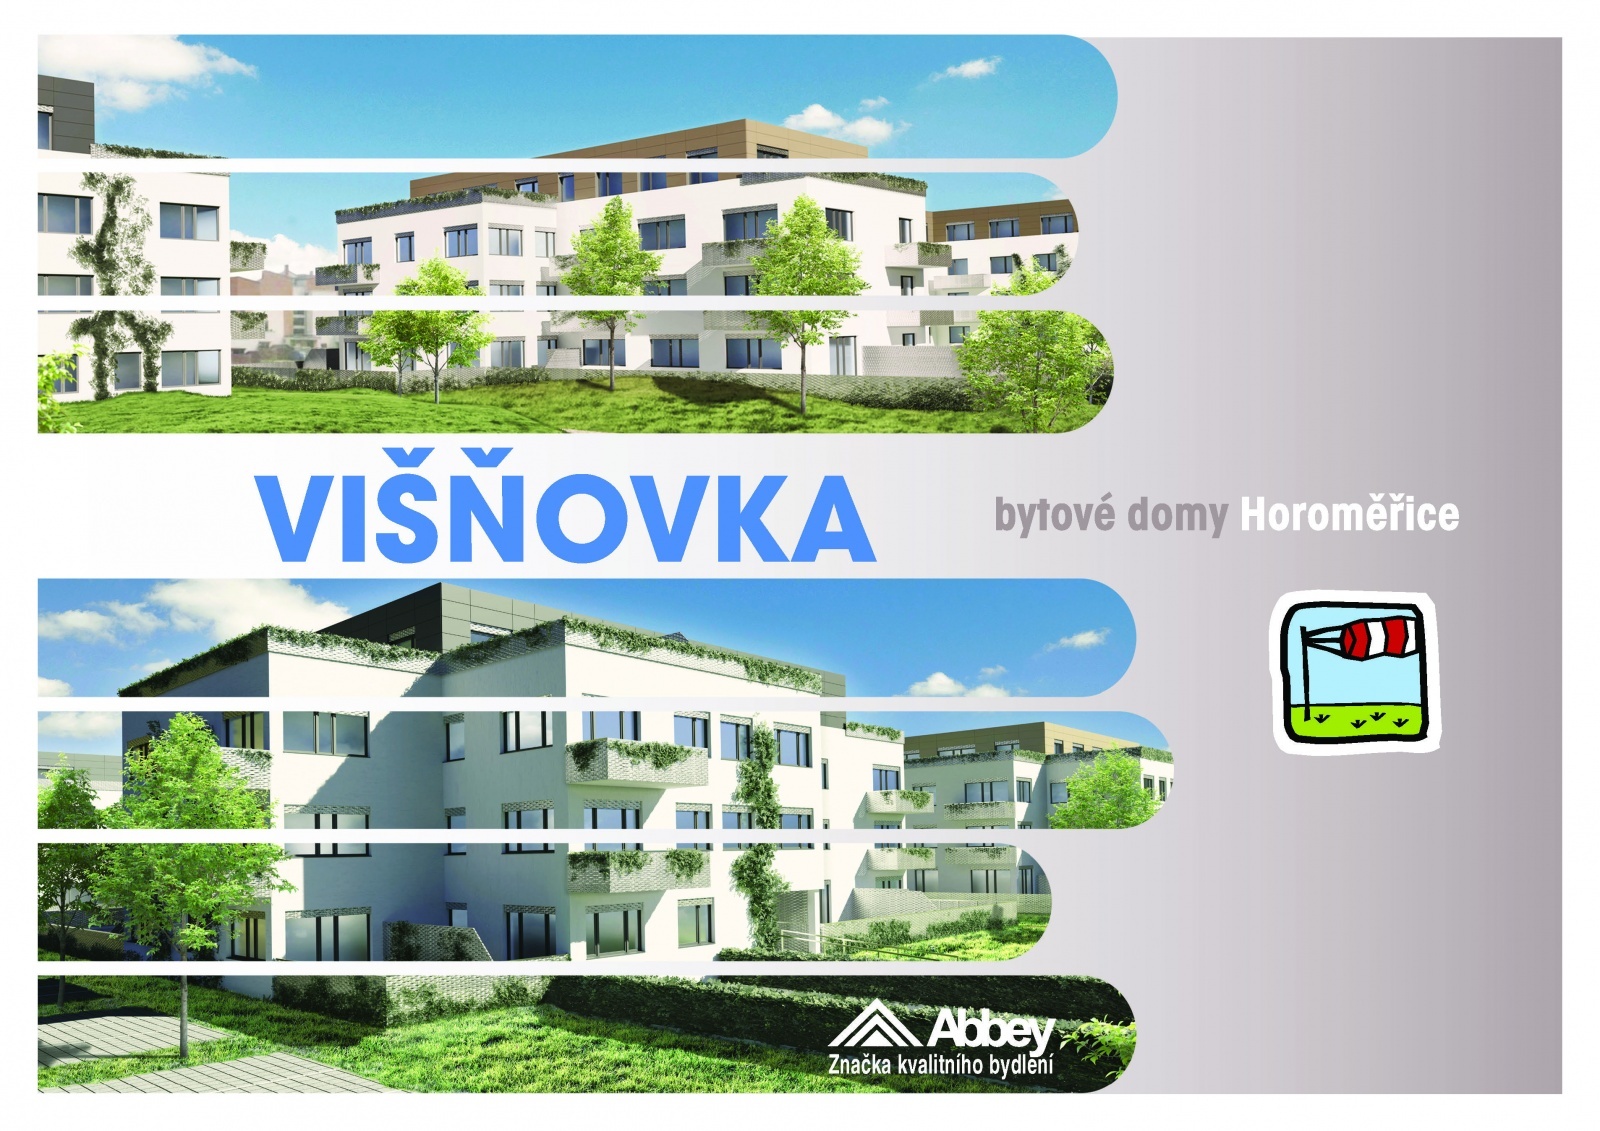 Studio 3+kk, 83.3 m2, Horoměřice, Projekt Višnovka - bytové domy